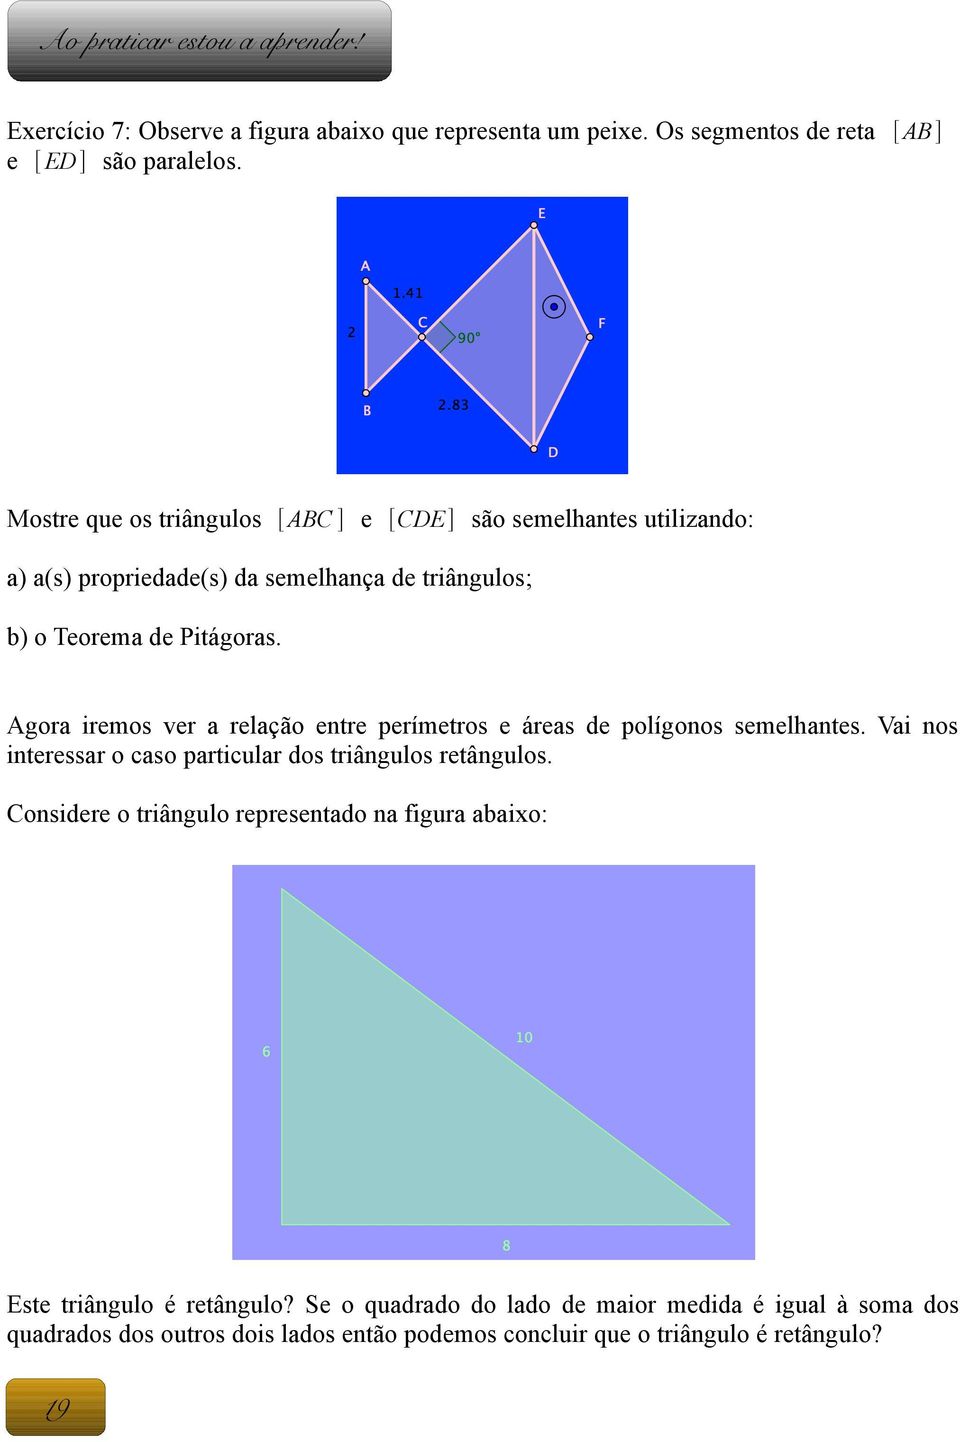 Agora iremos ver a relação entre perímetros e áreas de polígonos semelhantes. Vai nos interessar o caso particular dos triângulos retângulos.